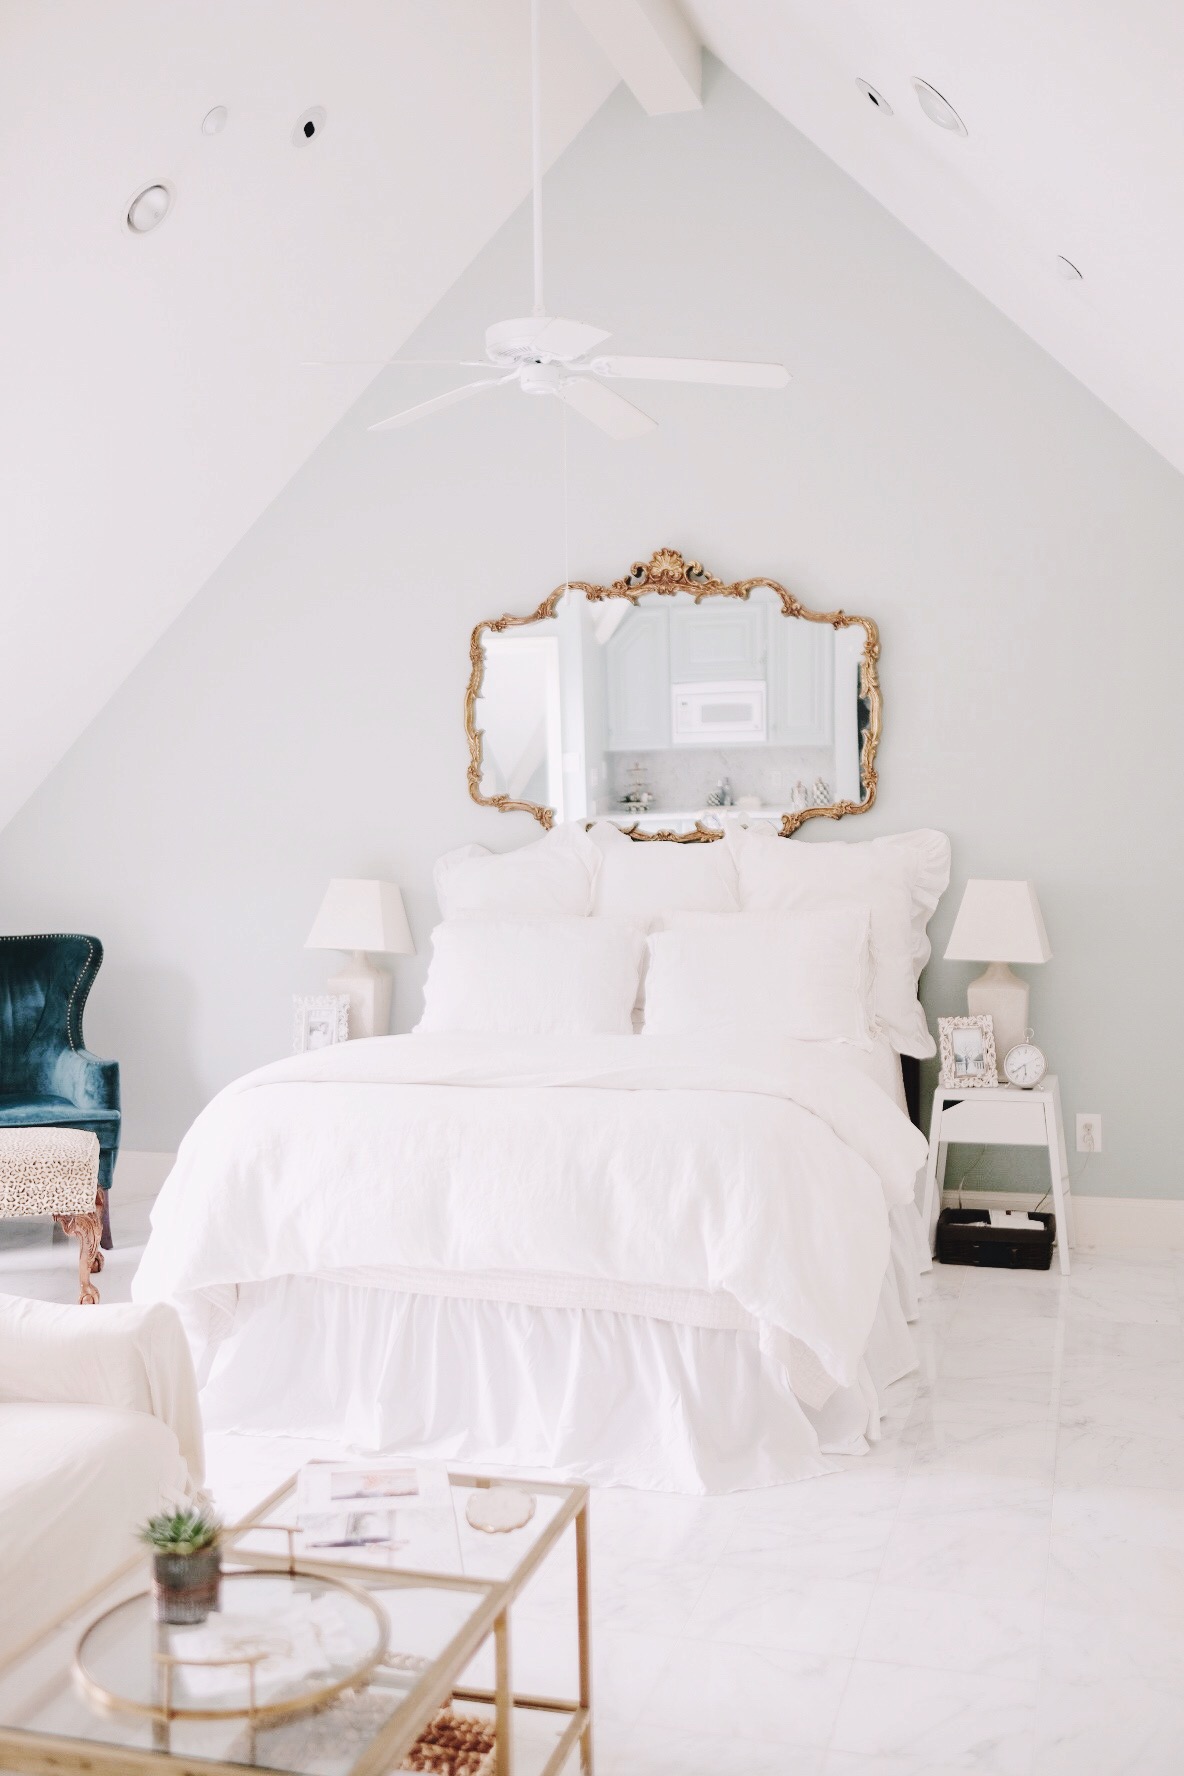 All white bedding | Miss Madeline Rose